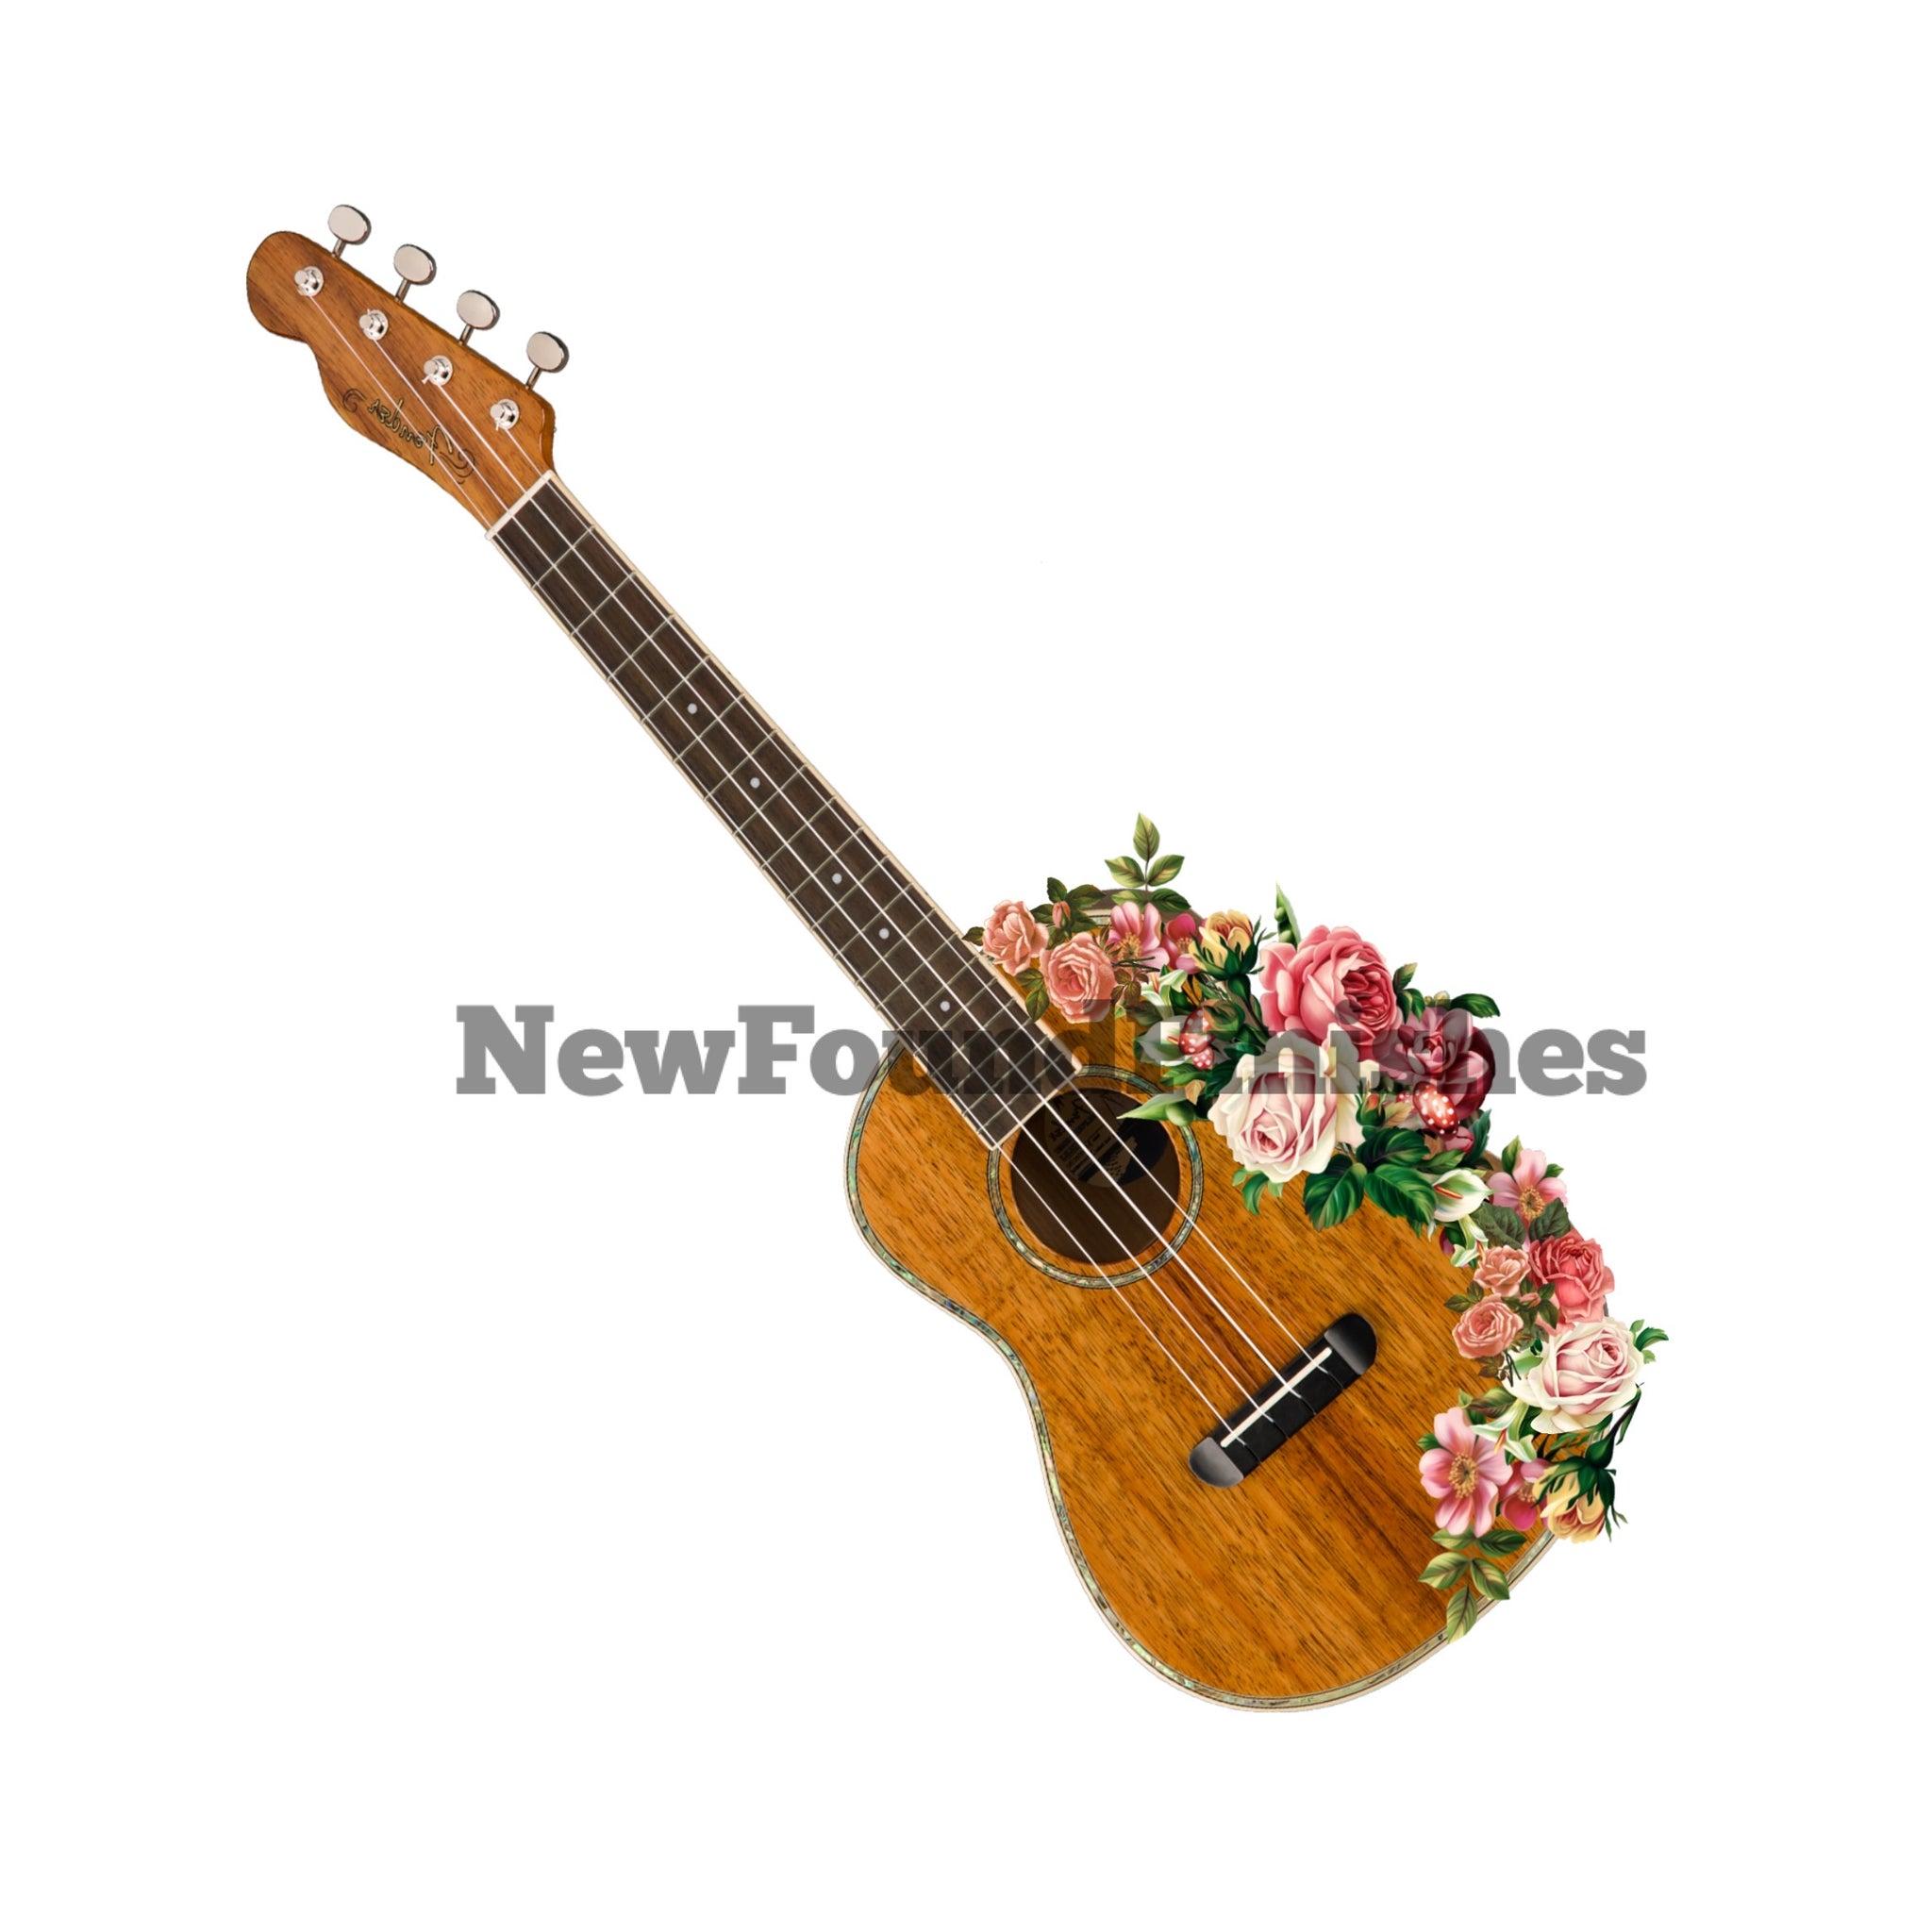 Floral guitar